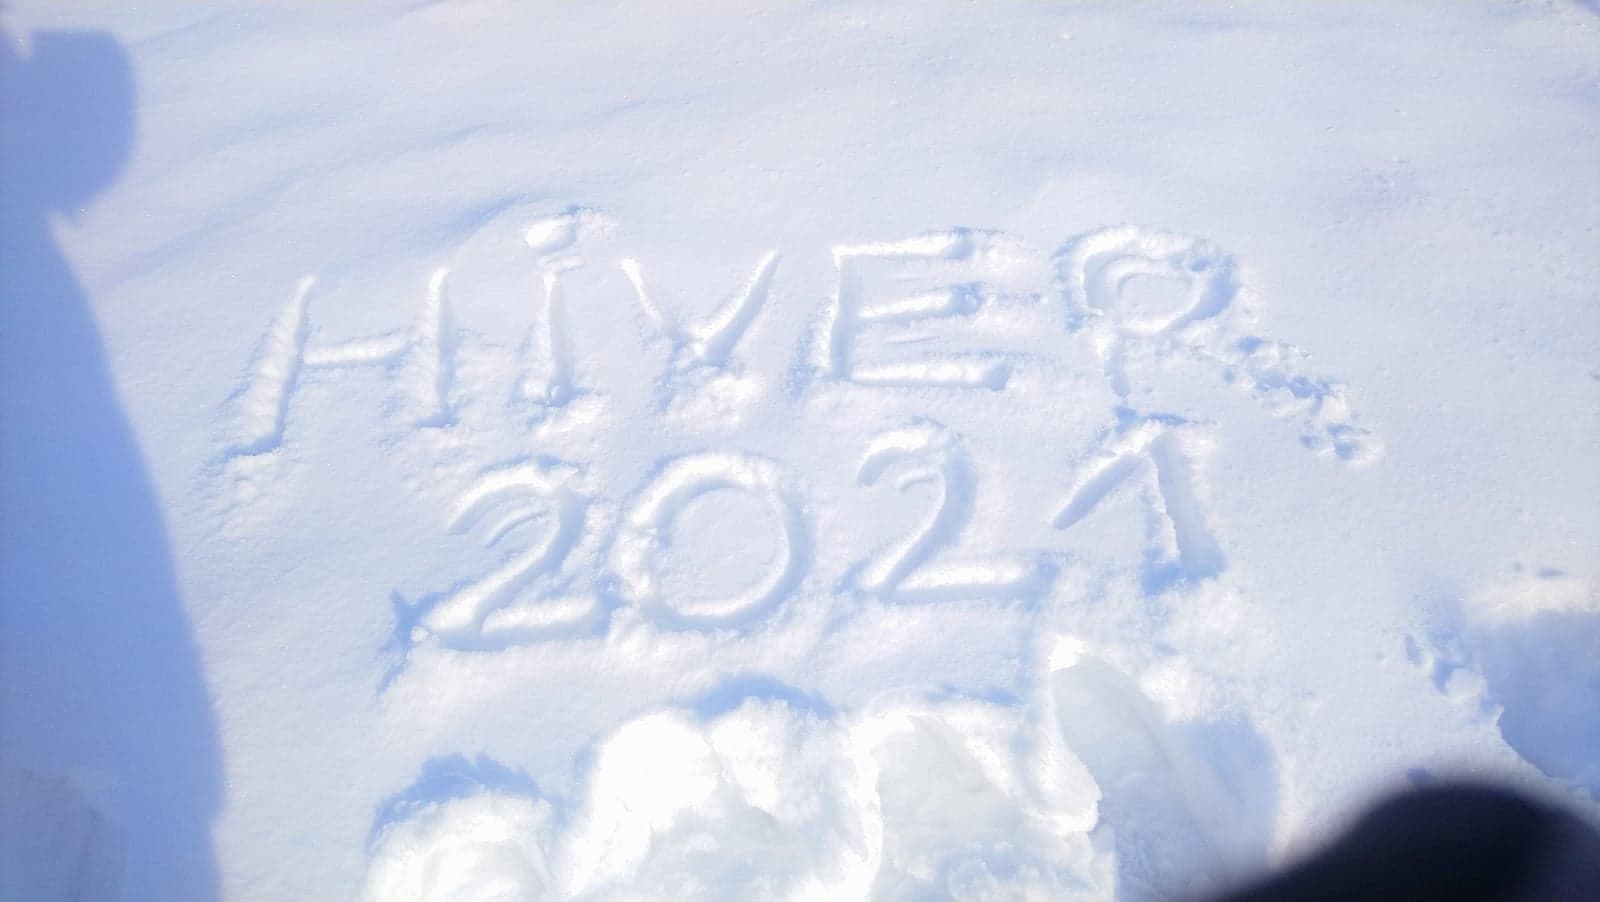 2021.01.15 journée neige (2)